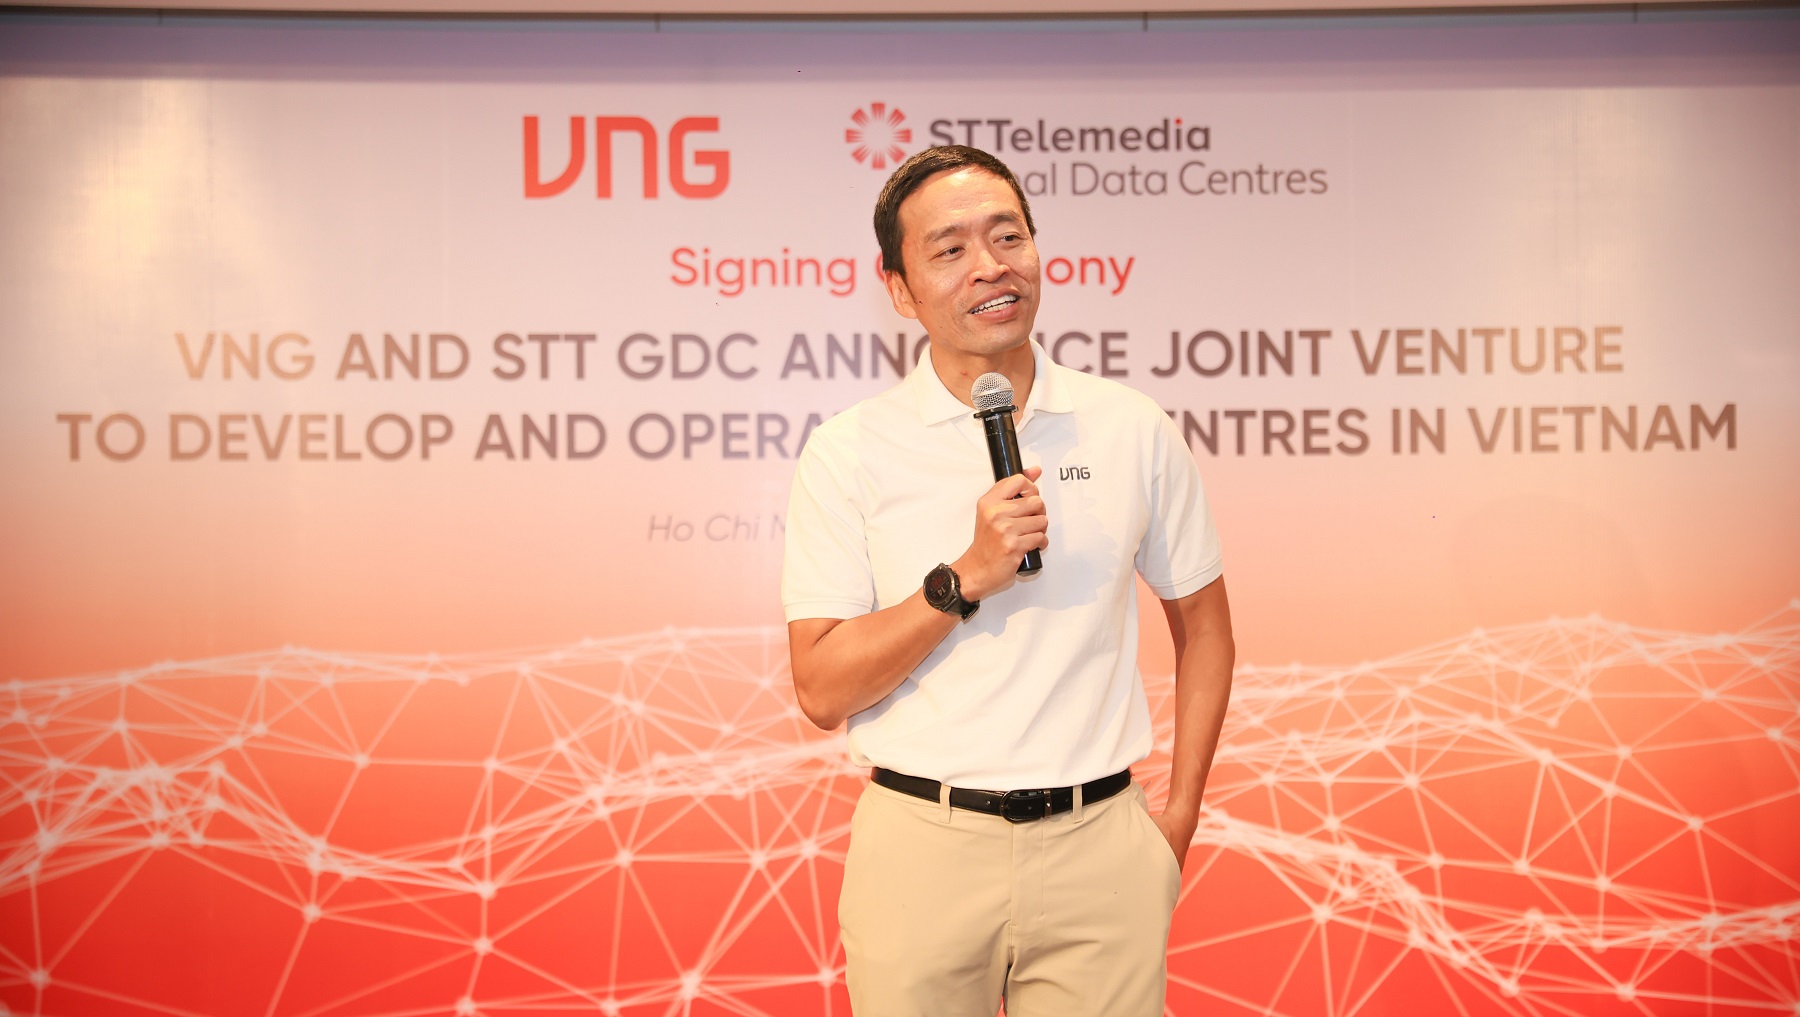 STT GDC hợp tác cùng VNG xây dựng và vận hành các dự án trung tâm dữ liệu theo tiêu chuẩn quốc tế tại Việt Nam 9